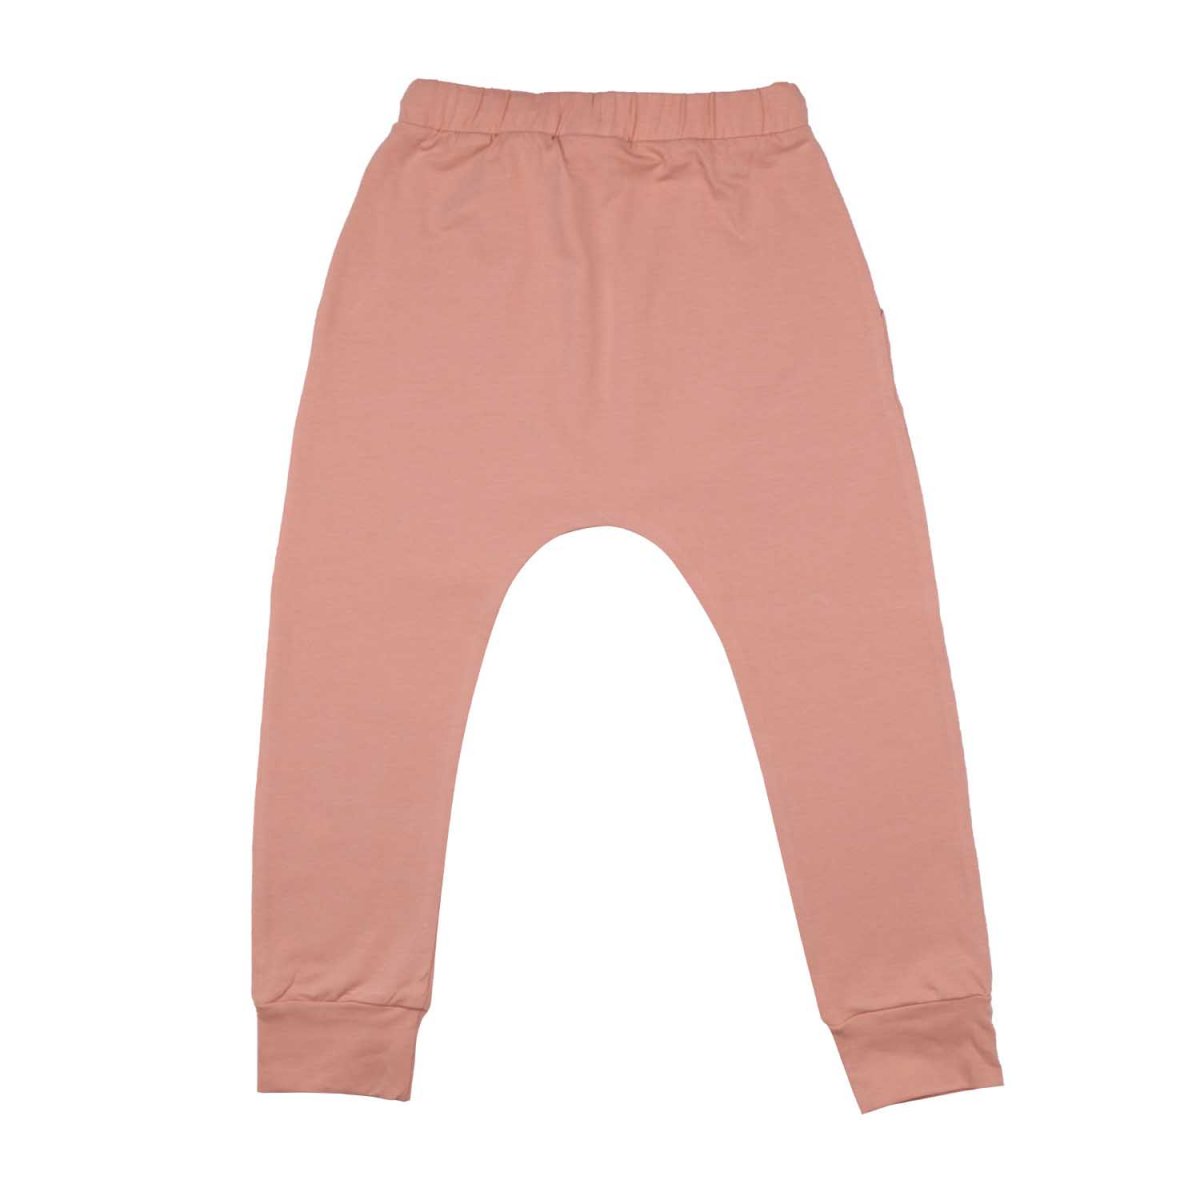 Pantaloni Baggy rosa chiaro per bambine in cotone biologico_91267